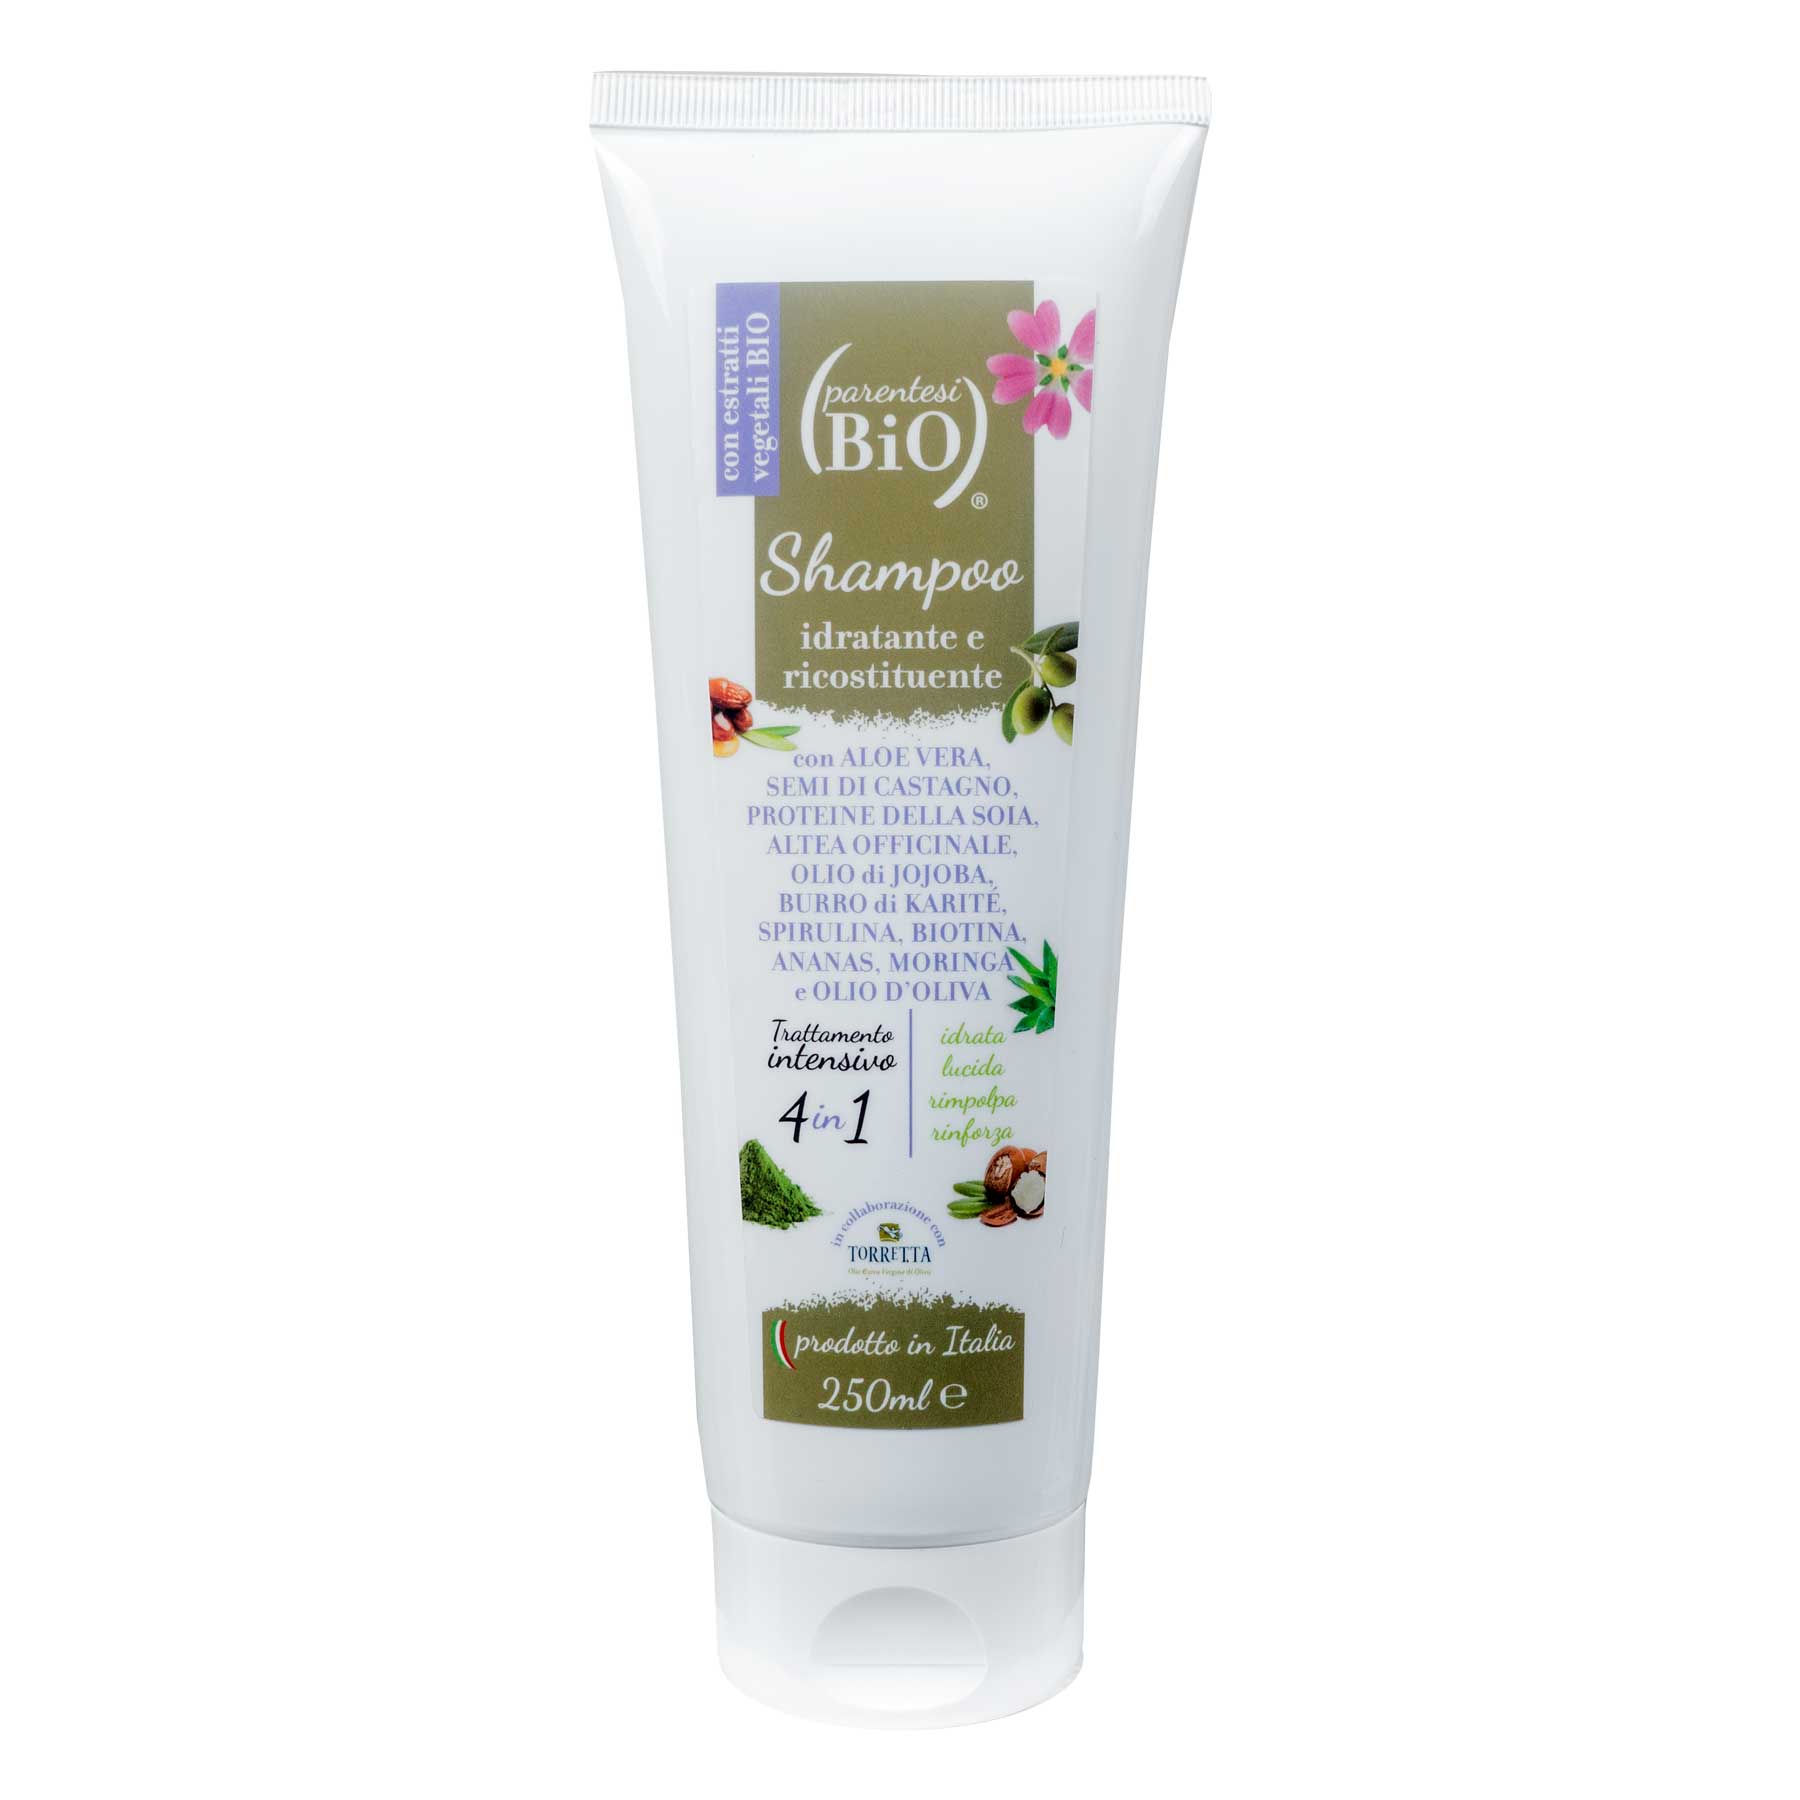 Shampoo idratante e ricostituente - Parentesi Bio - il Bio Blog e shop  online